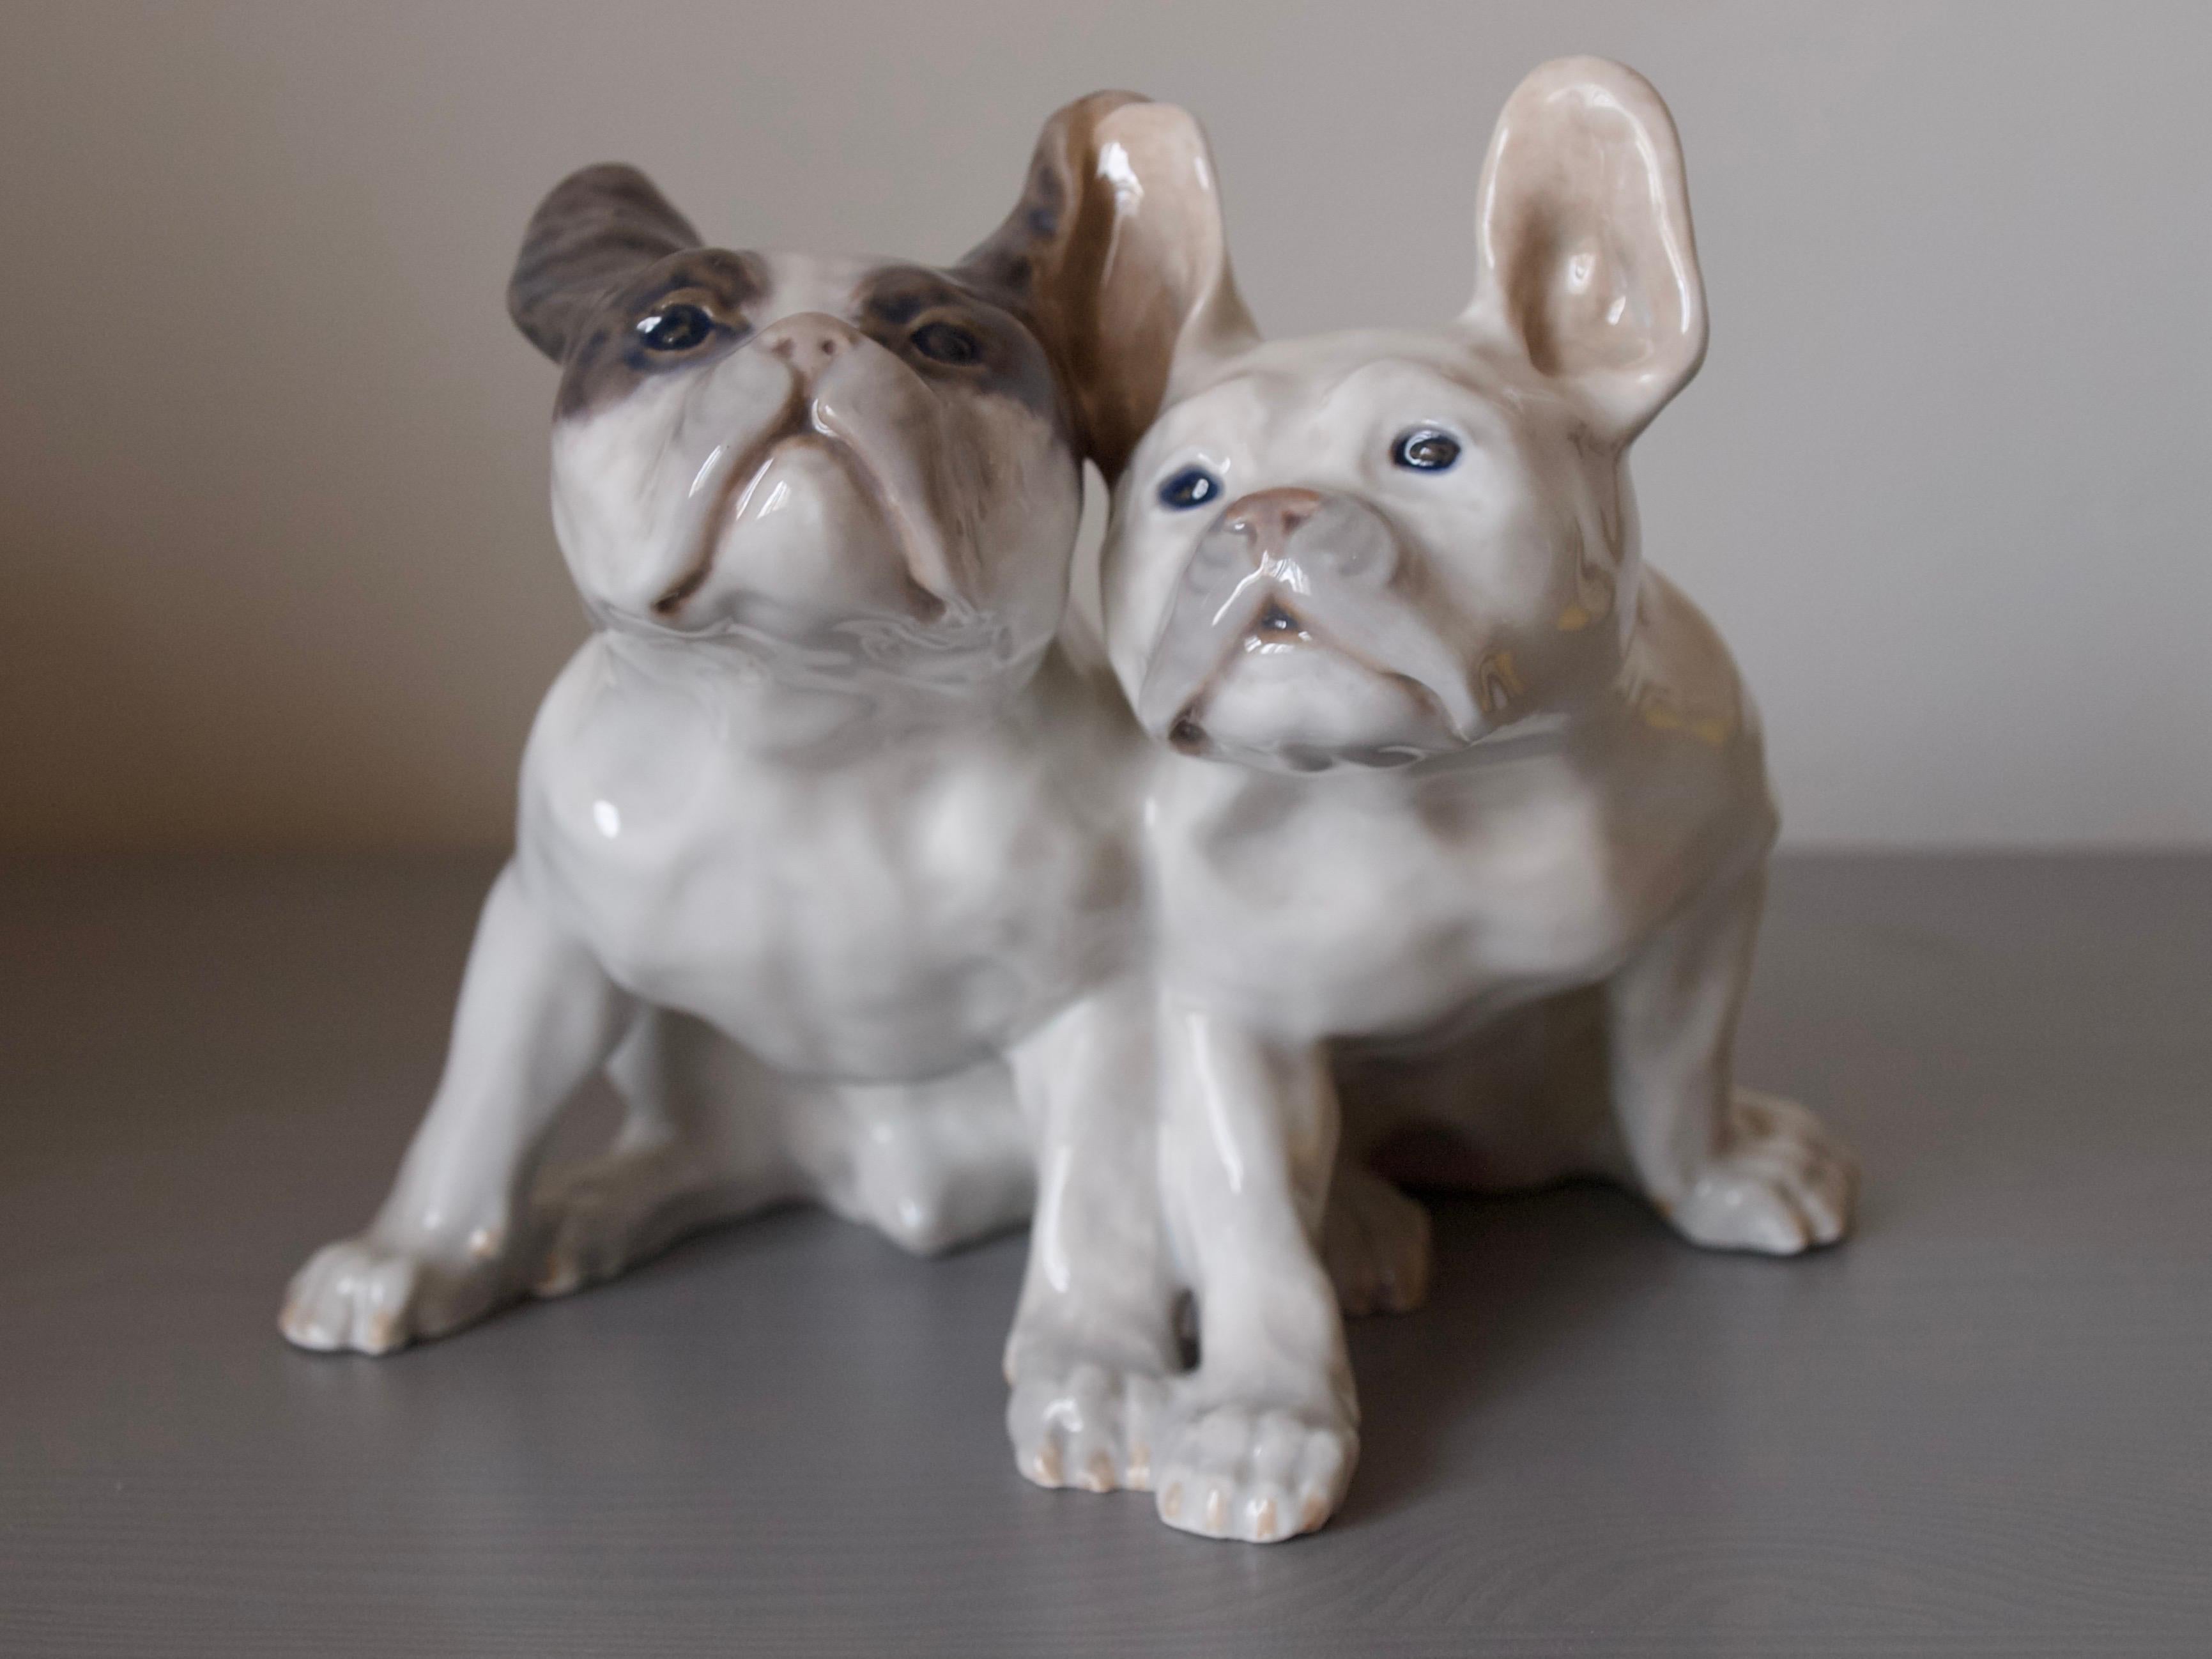 Besonders seltene französische Bulldoggen, entworfen von Knud Kyhn
1908 von der Porzellanmanufaktur Royal Copenhagen hergestellt,
Dänemark mit der Nummer 1452 / 957.

Knud Kyhn (1880-1969) war einer der führenden dänischen Keramikkünstler des 20.